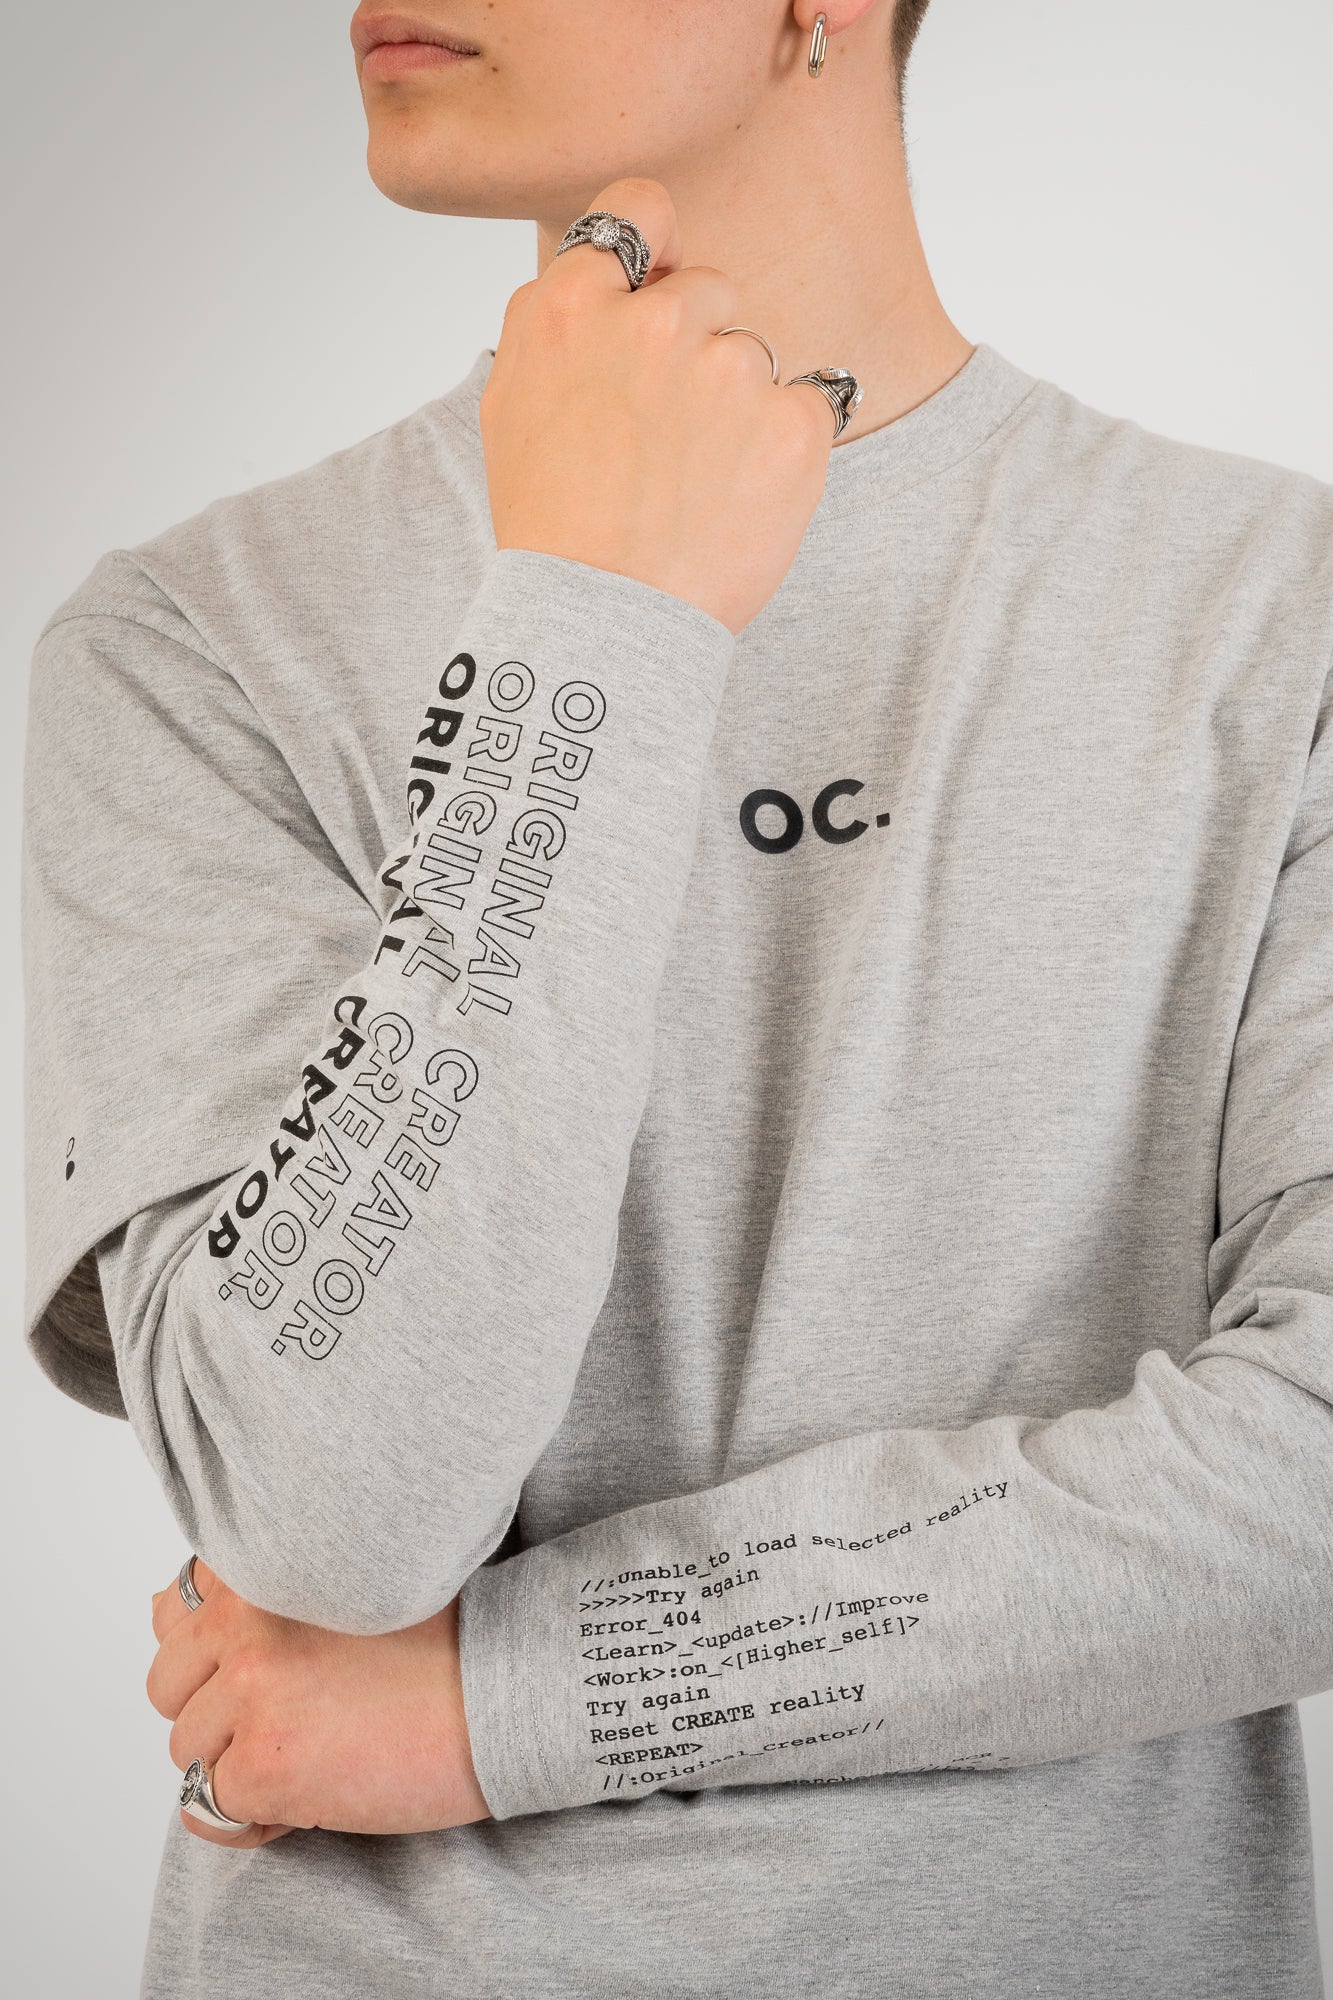 OC. Layered Sleeve T-Shirt - Granite Grey